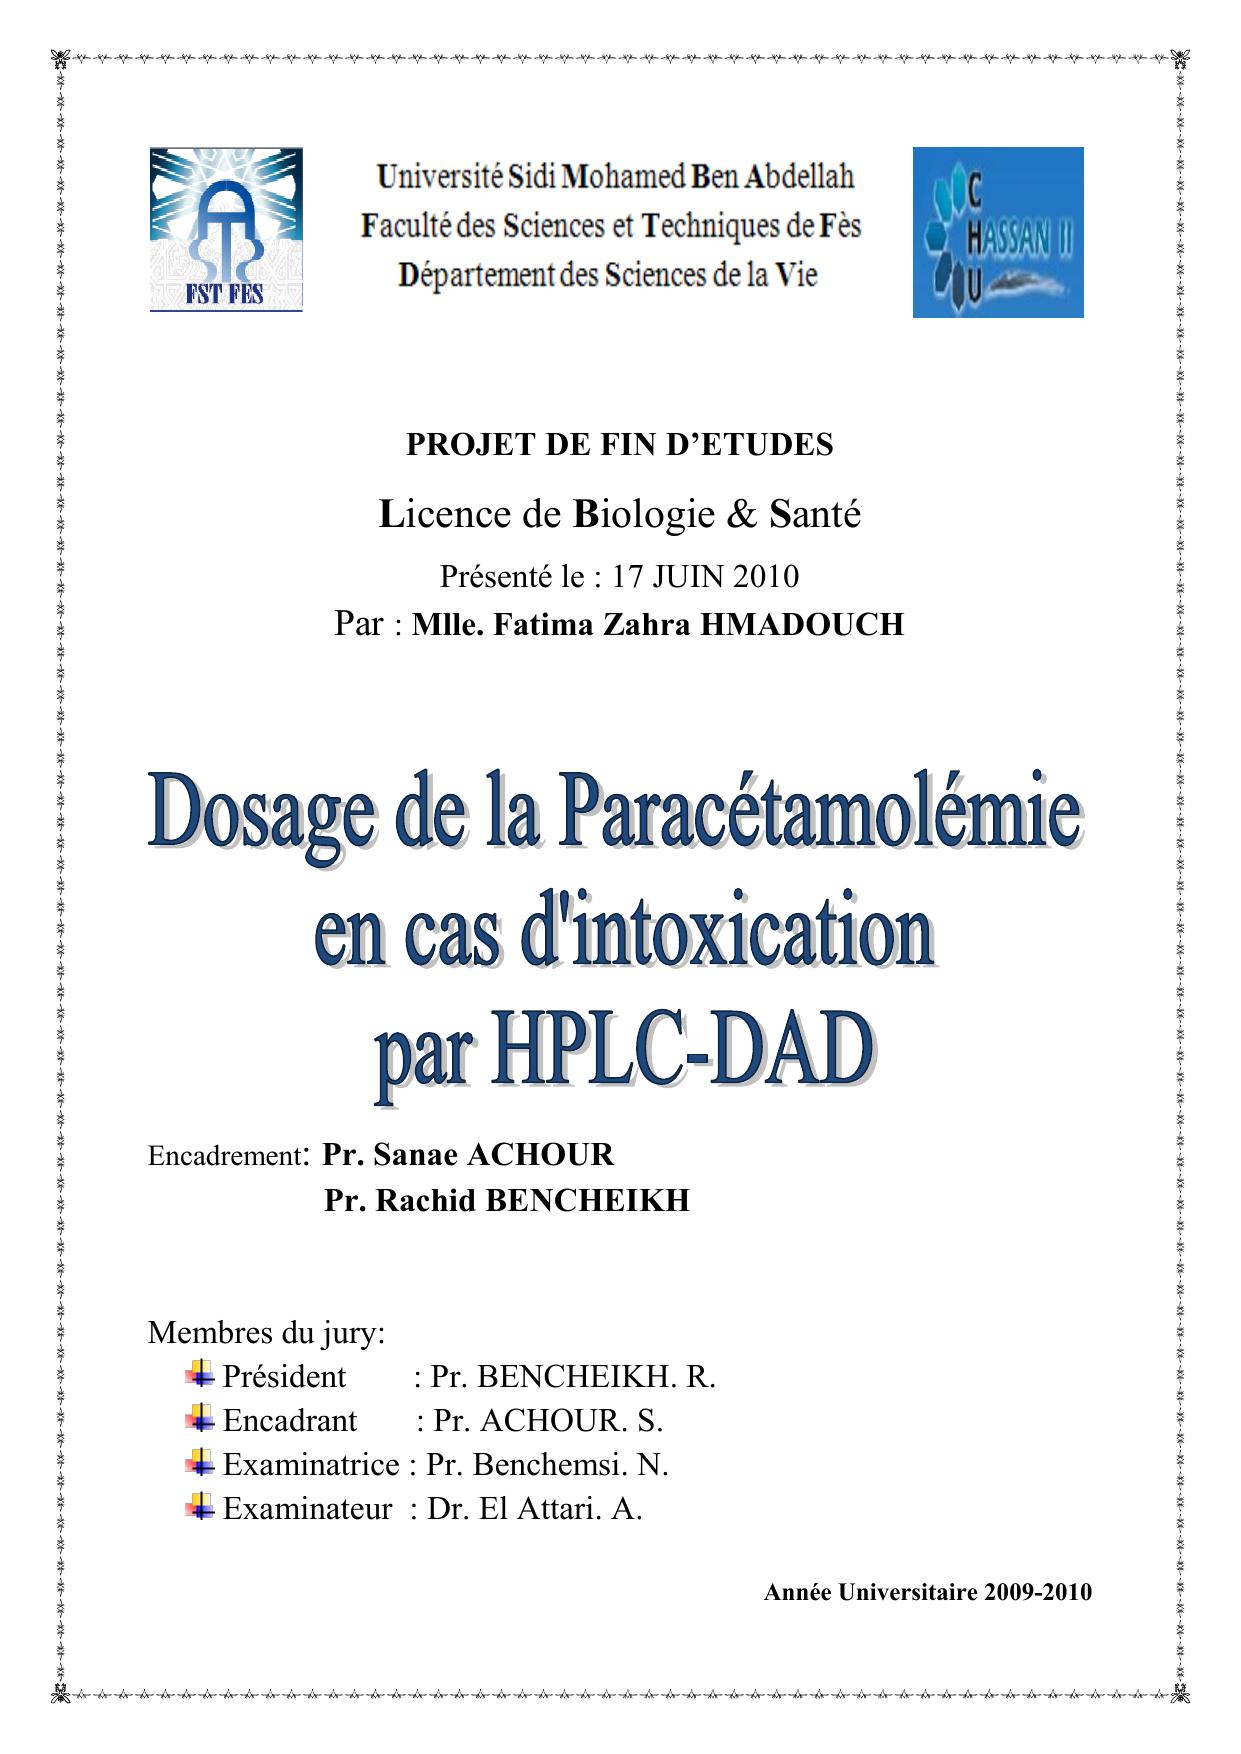 Dosage de la paracetamolemie en cas d'intoxication par HPLC-DAD